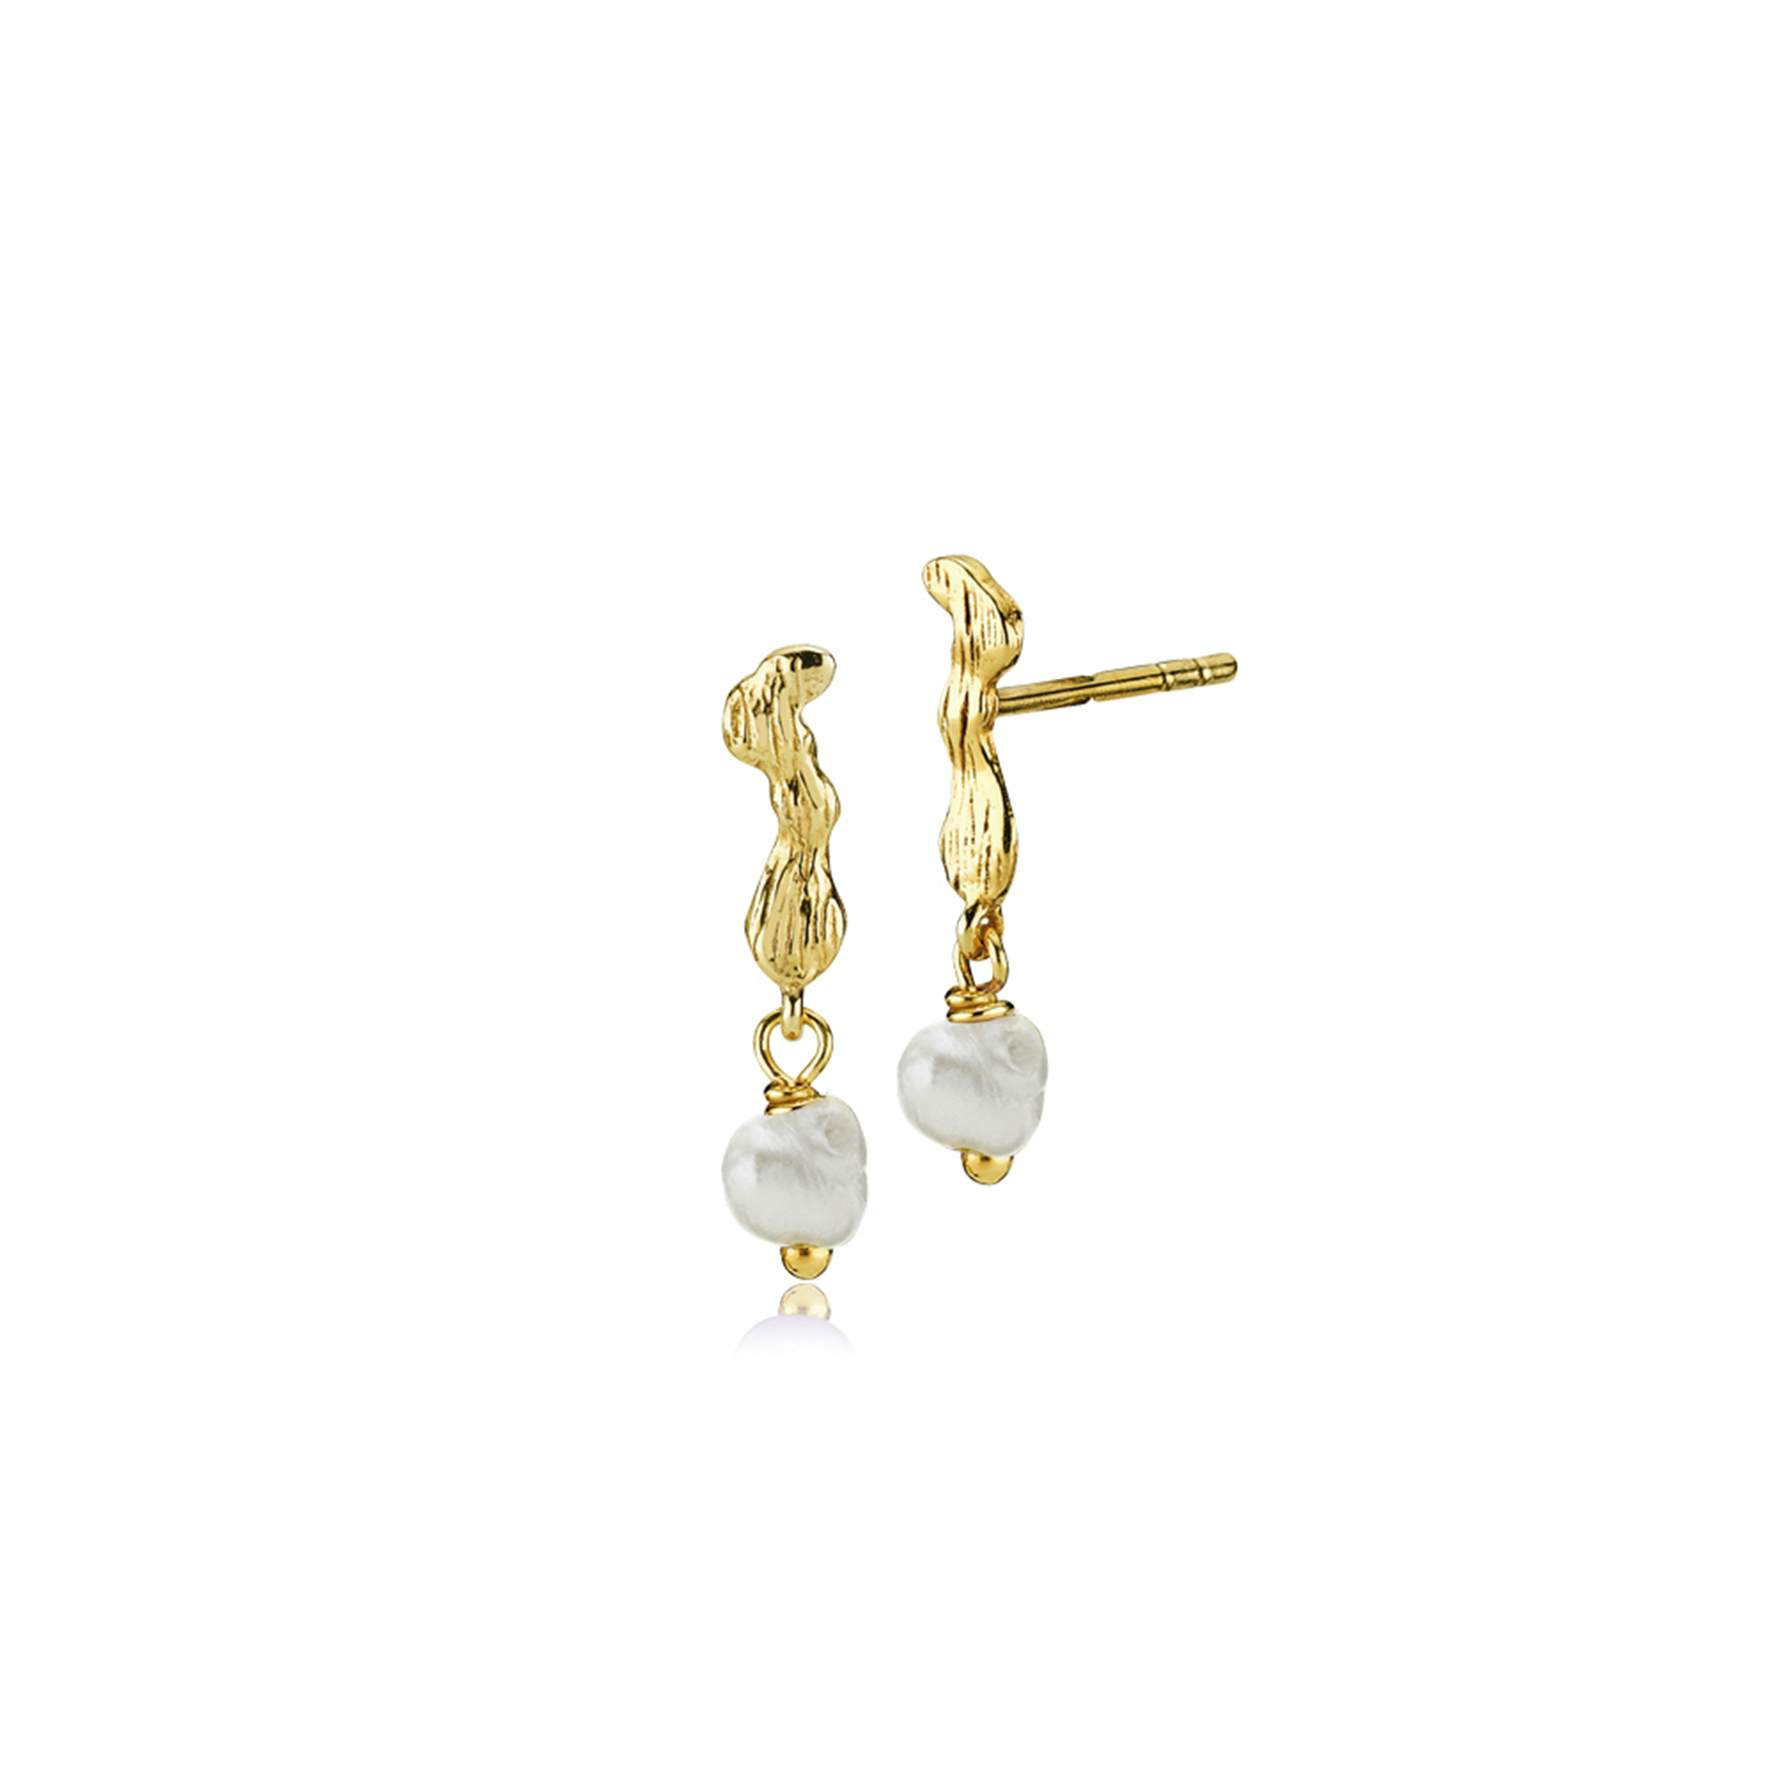 Lærke Bentsen By Sistie Earsticks With Pearls von Sistie in Vergoldet-Silber Sterling 925|Freshwater Pearl